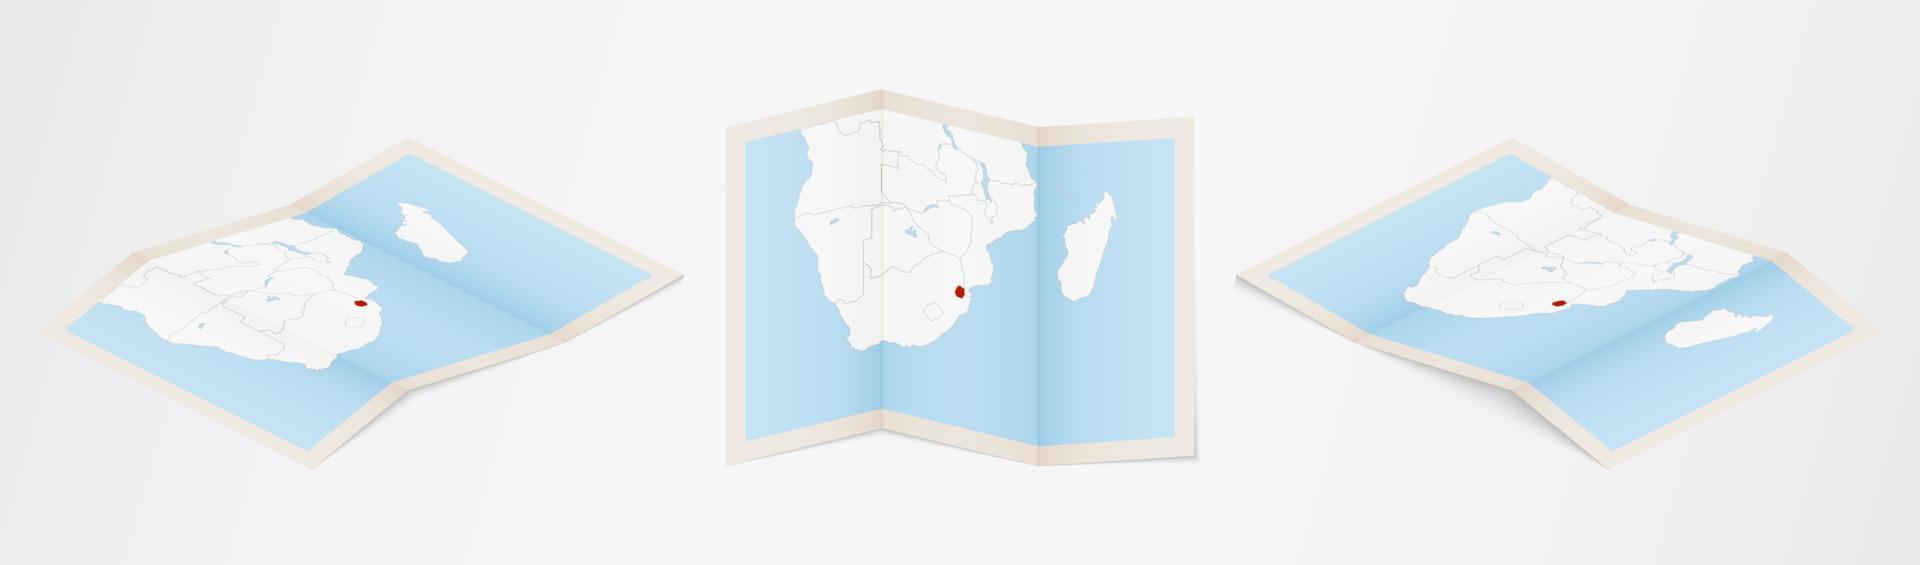 carte pliée du swaziland en trois versions différentes. vecteur